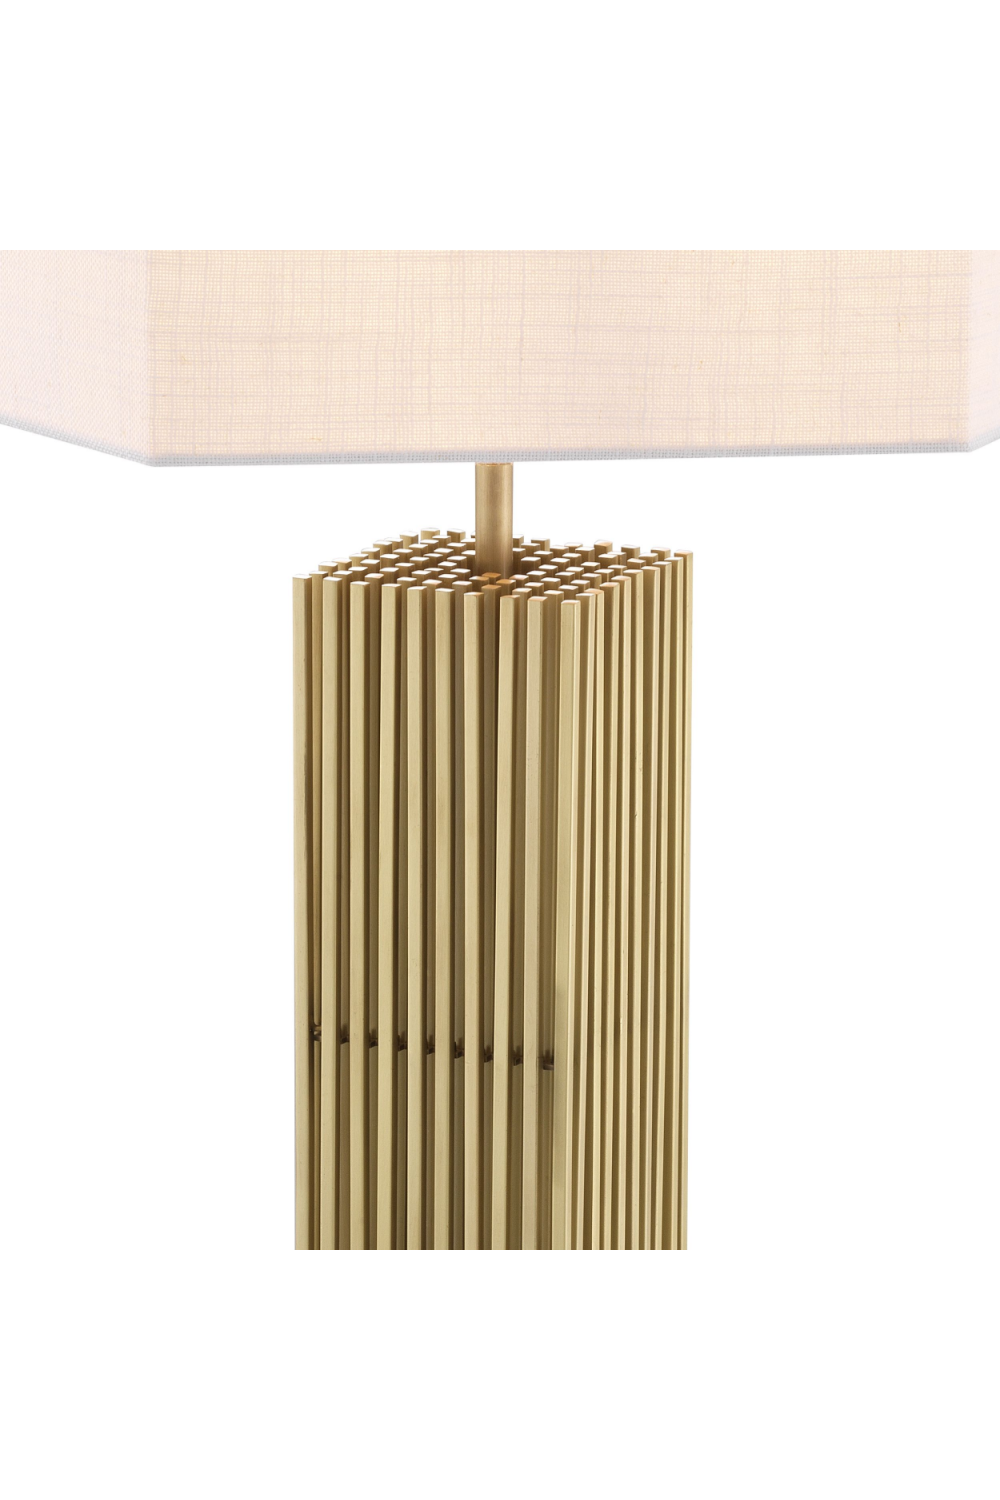 Brass Black Marble Table Lamp | Eichholtz Viggo | OROA